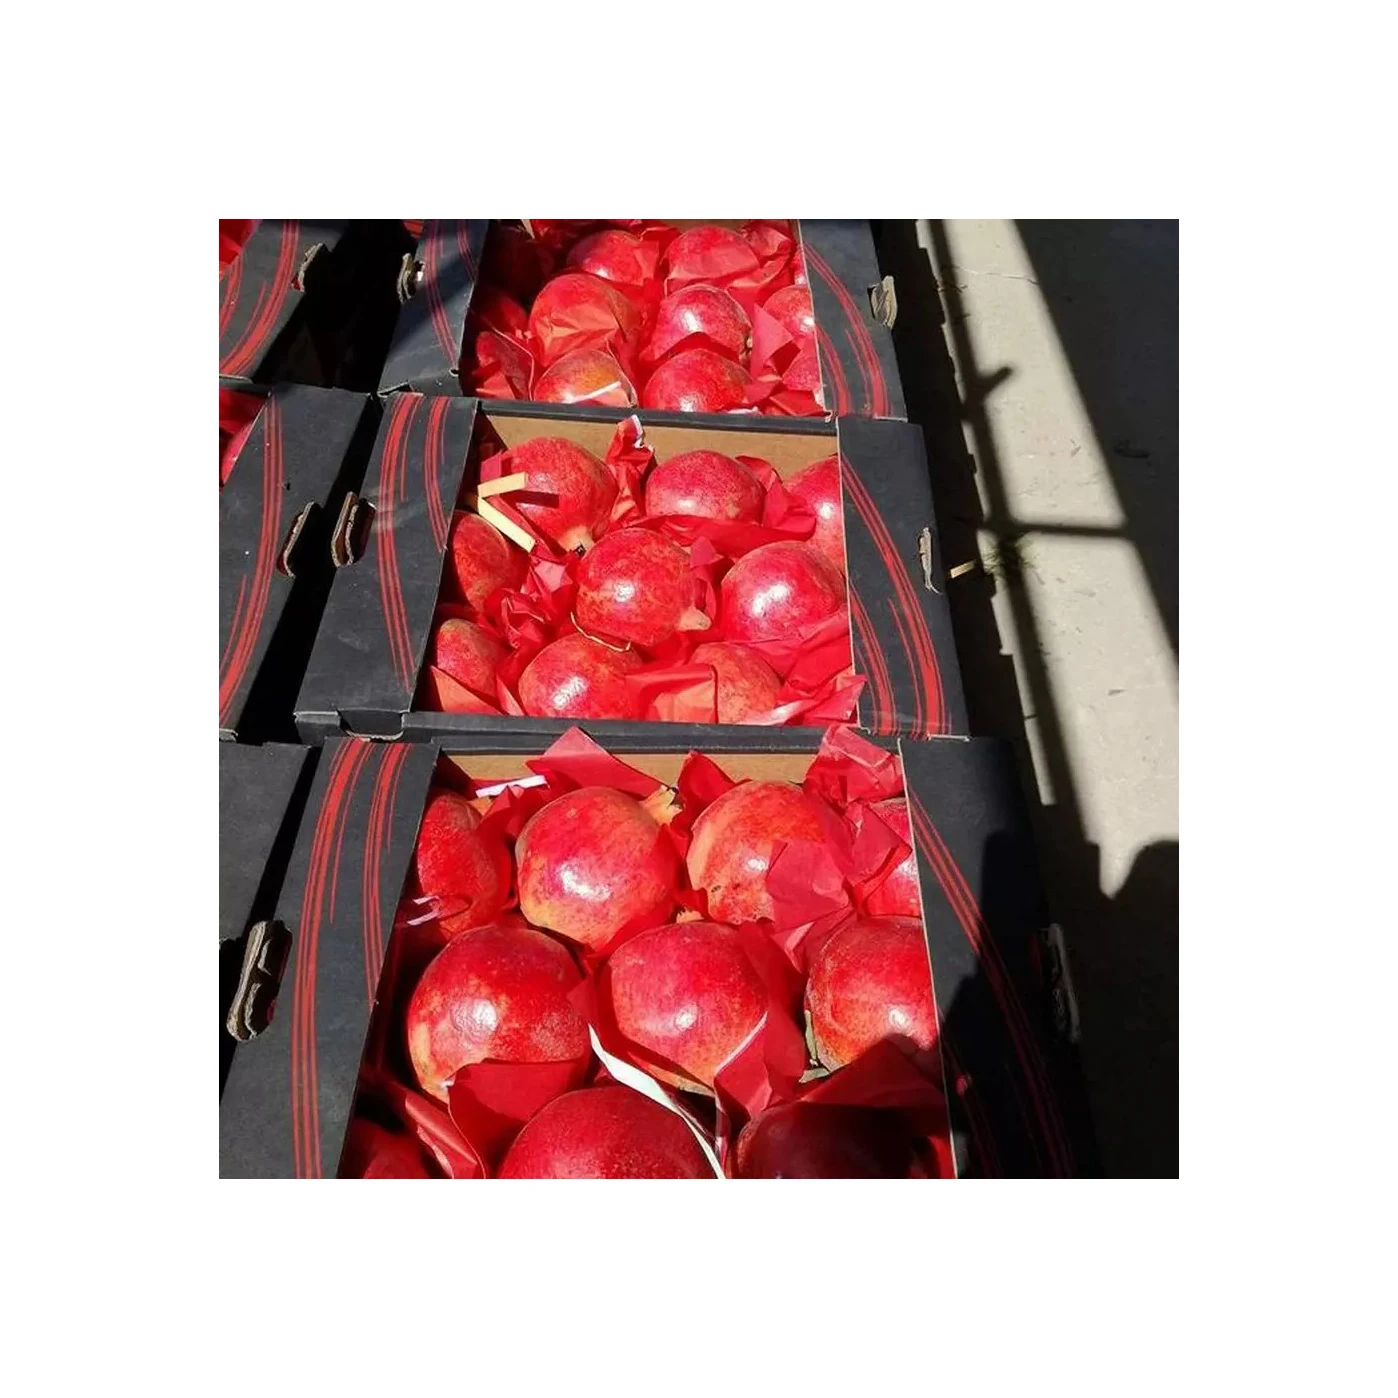 Свежий 100% натуральный красный фруктовый гранат для продажи в Португалии по воздуху Быстрая